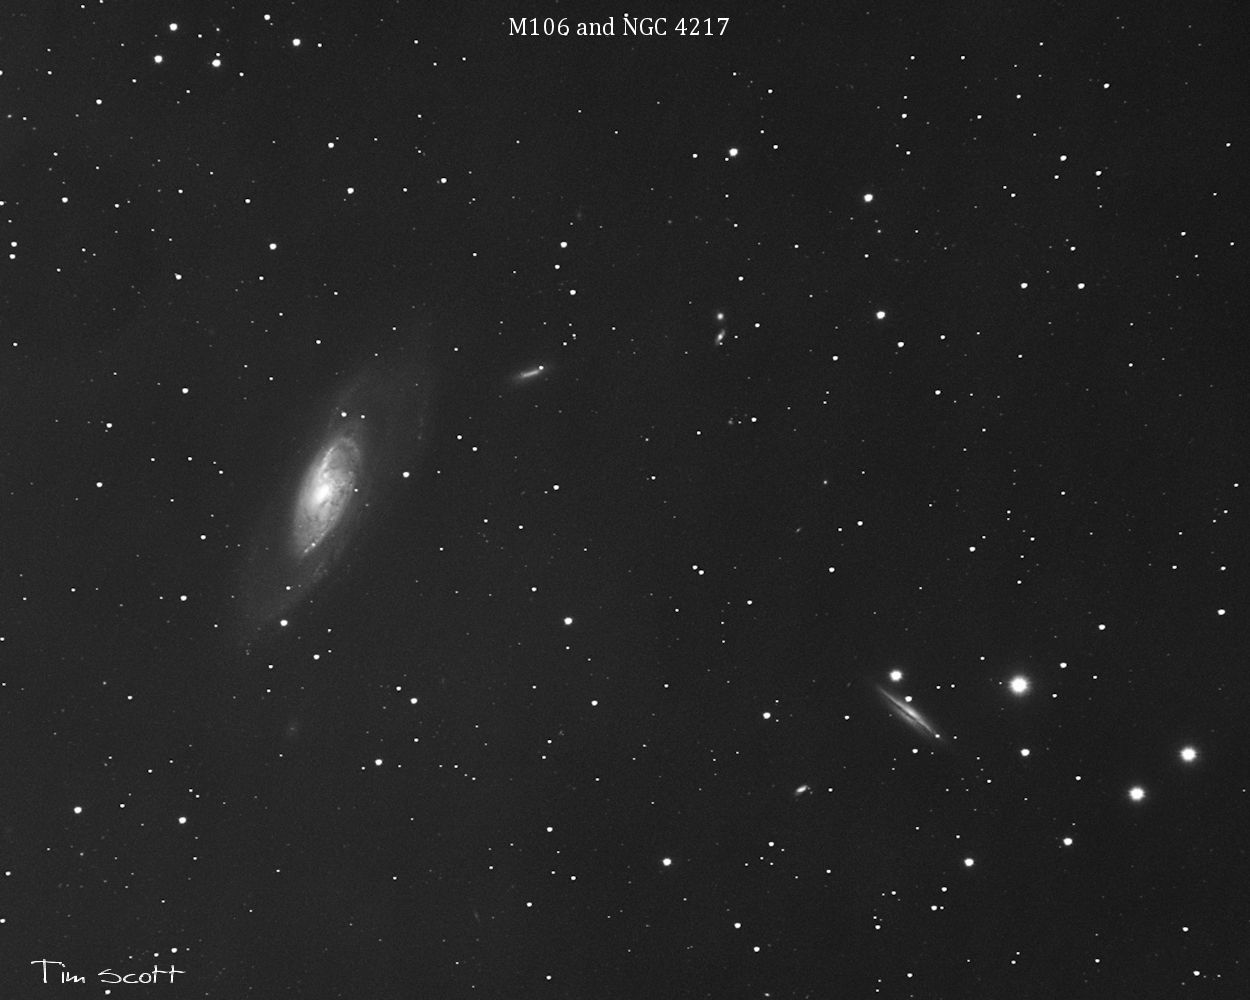 M106 NGC4217